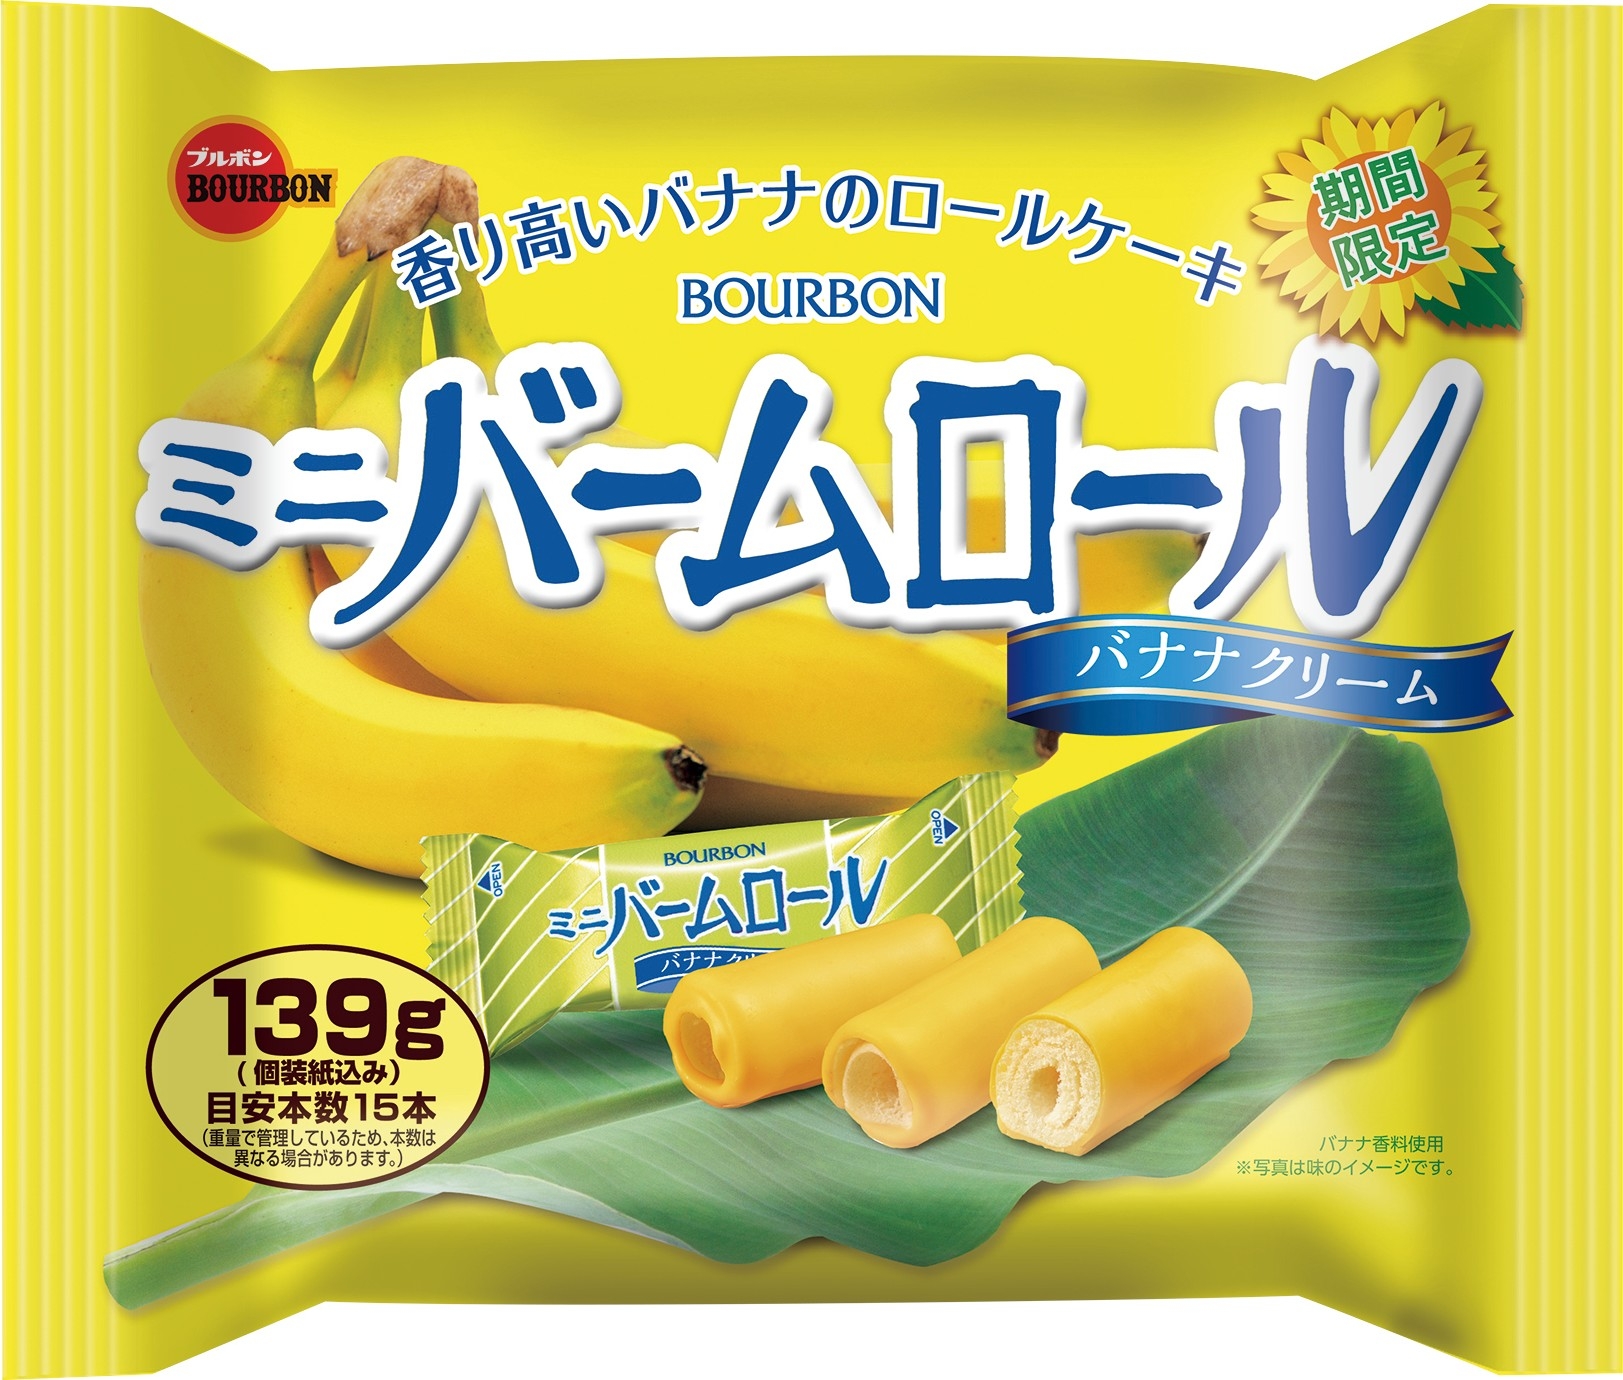 中評価 ブルボン ミニバームロール バナナクリーム 袋139g 製造終了 のクチコミ 評価 値段 価格情報 もぐナビ